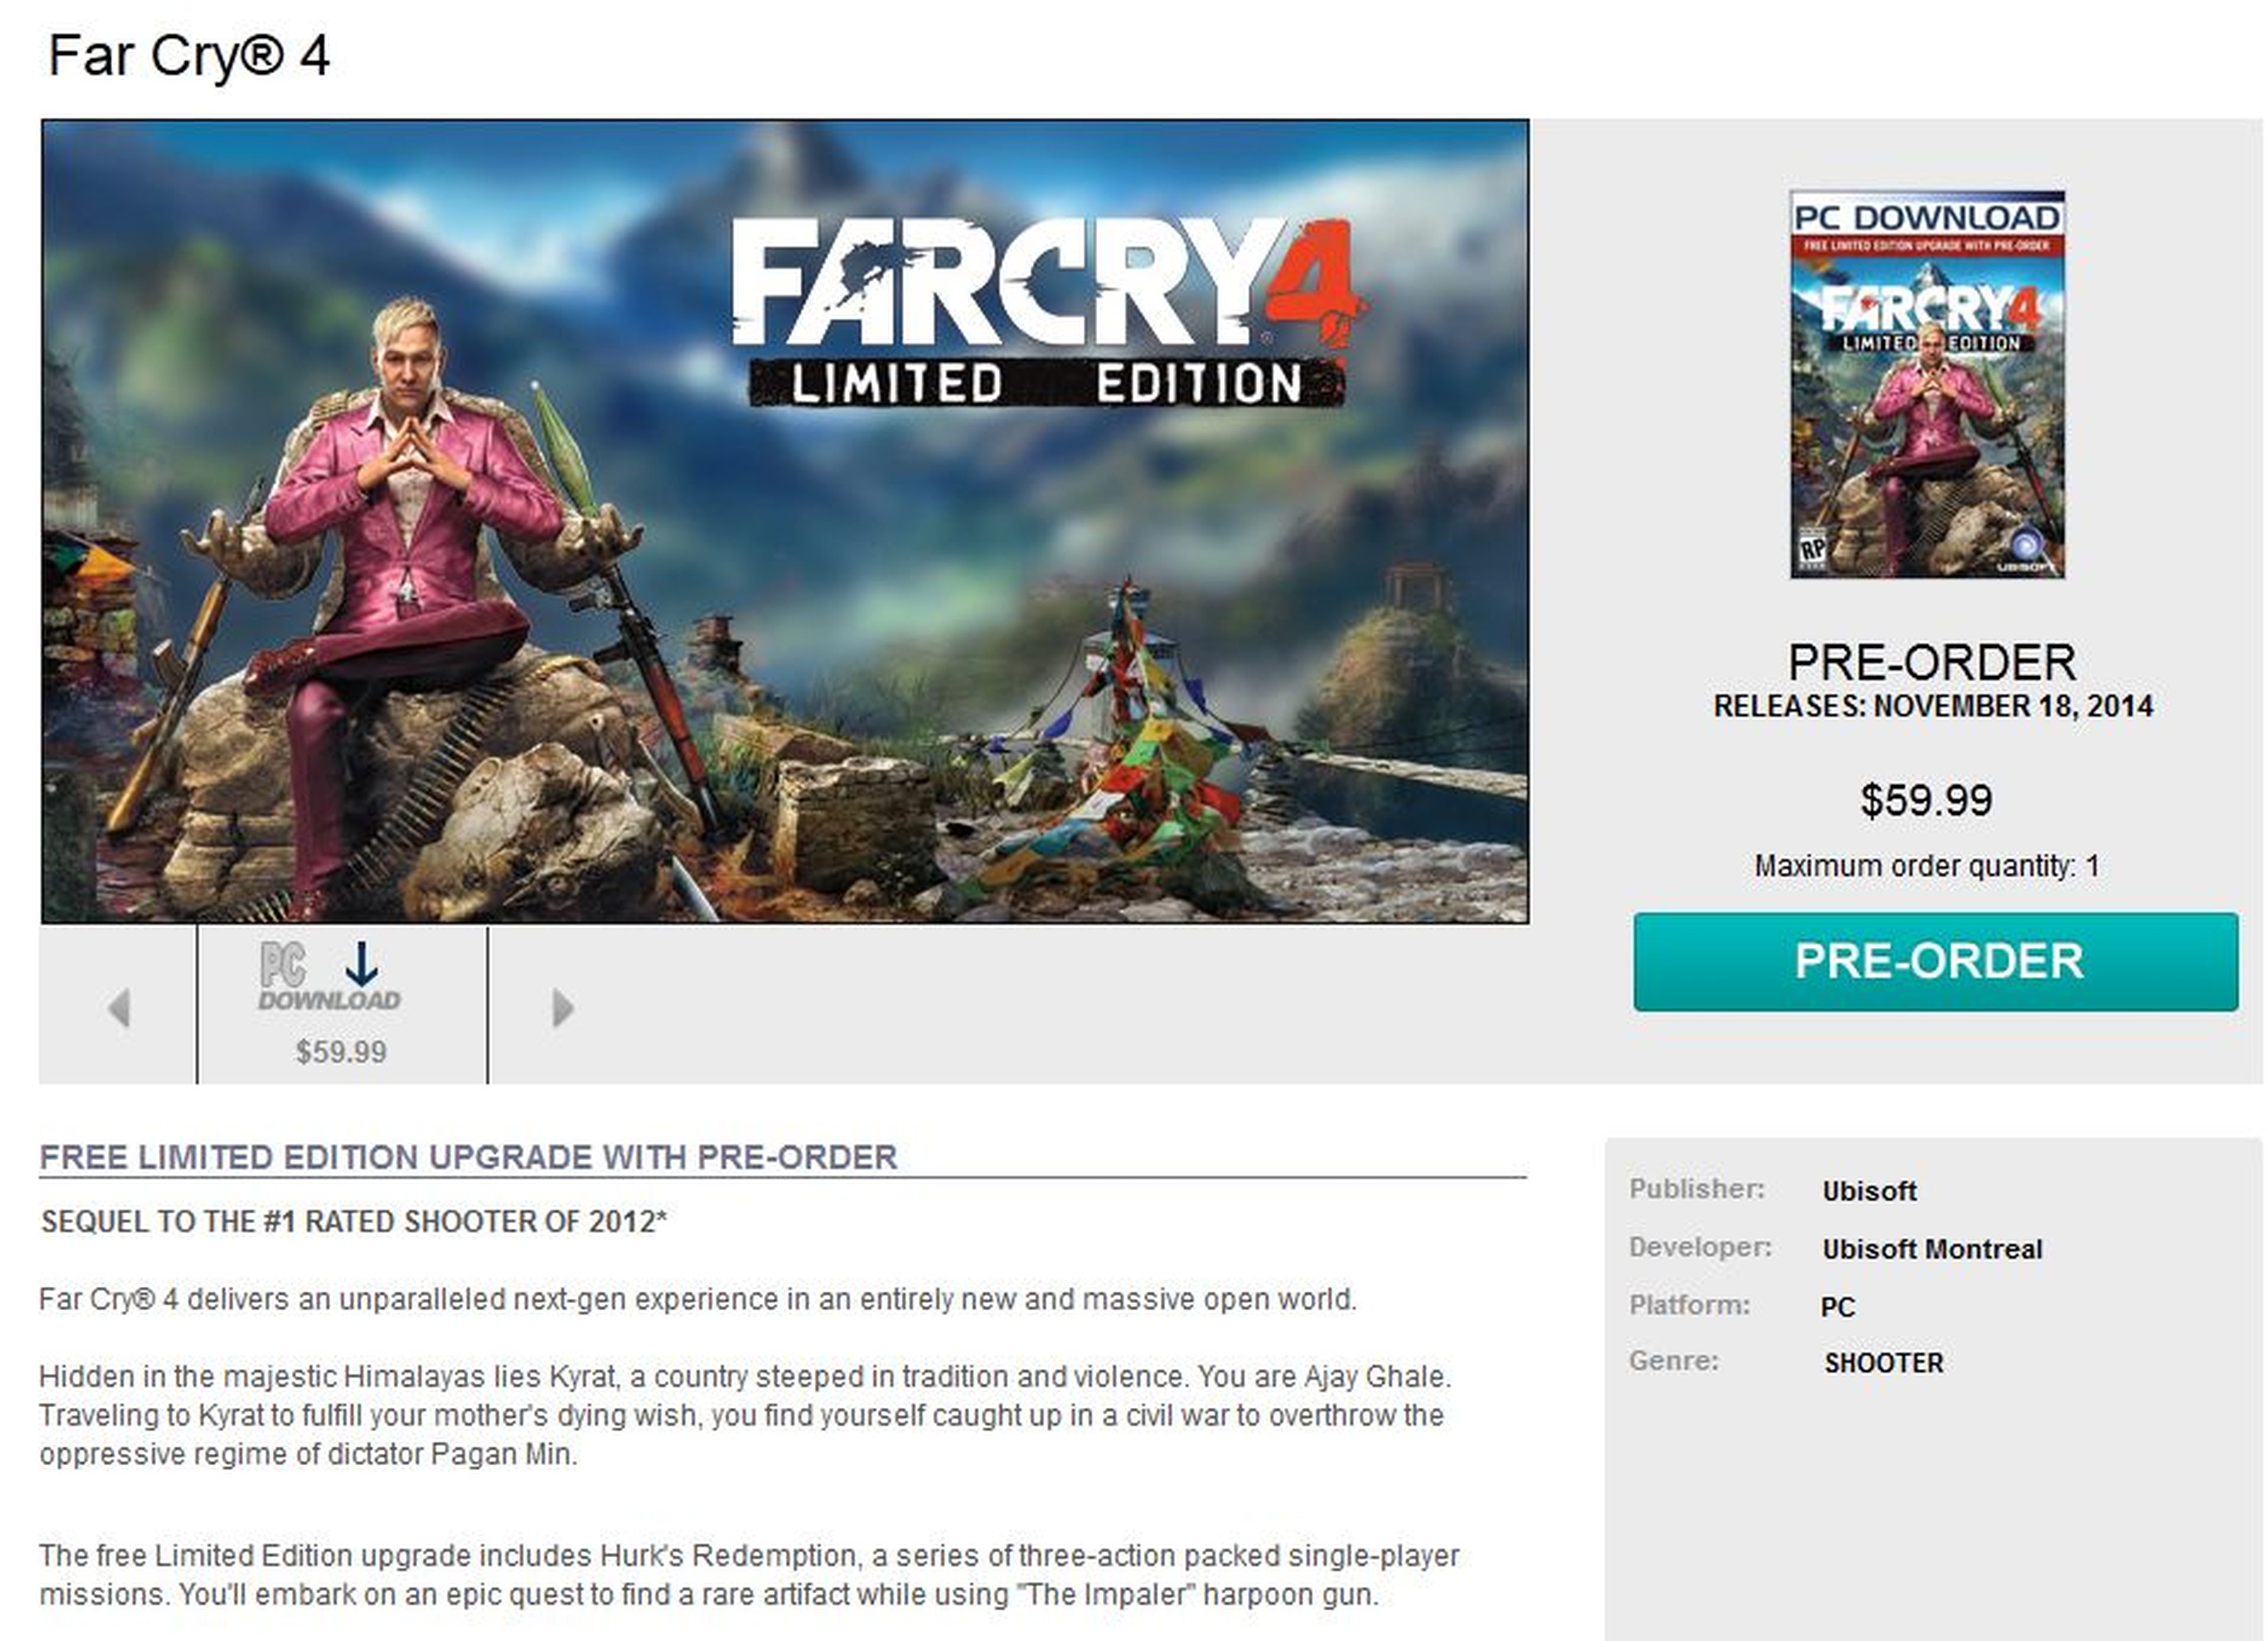 Más detalles sobre la historia de Far Cry 4